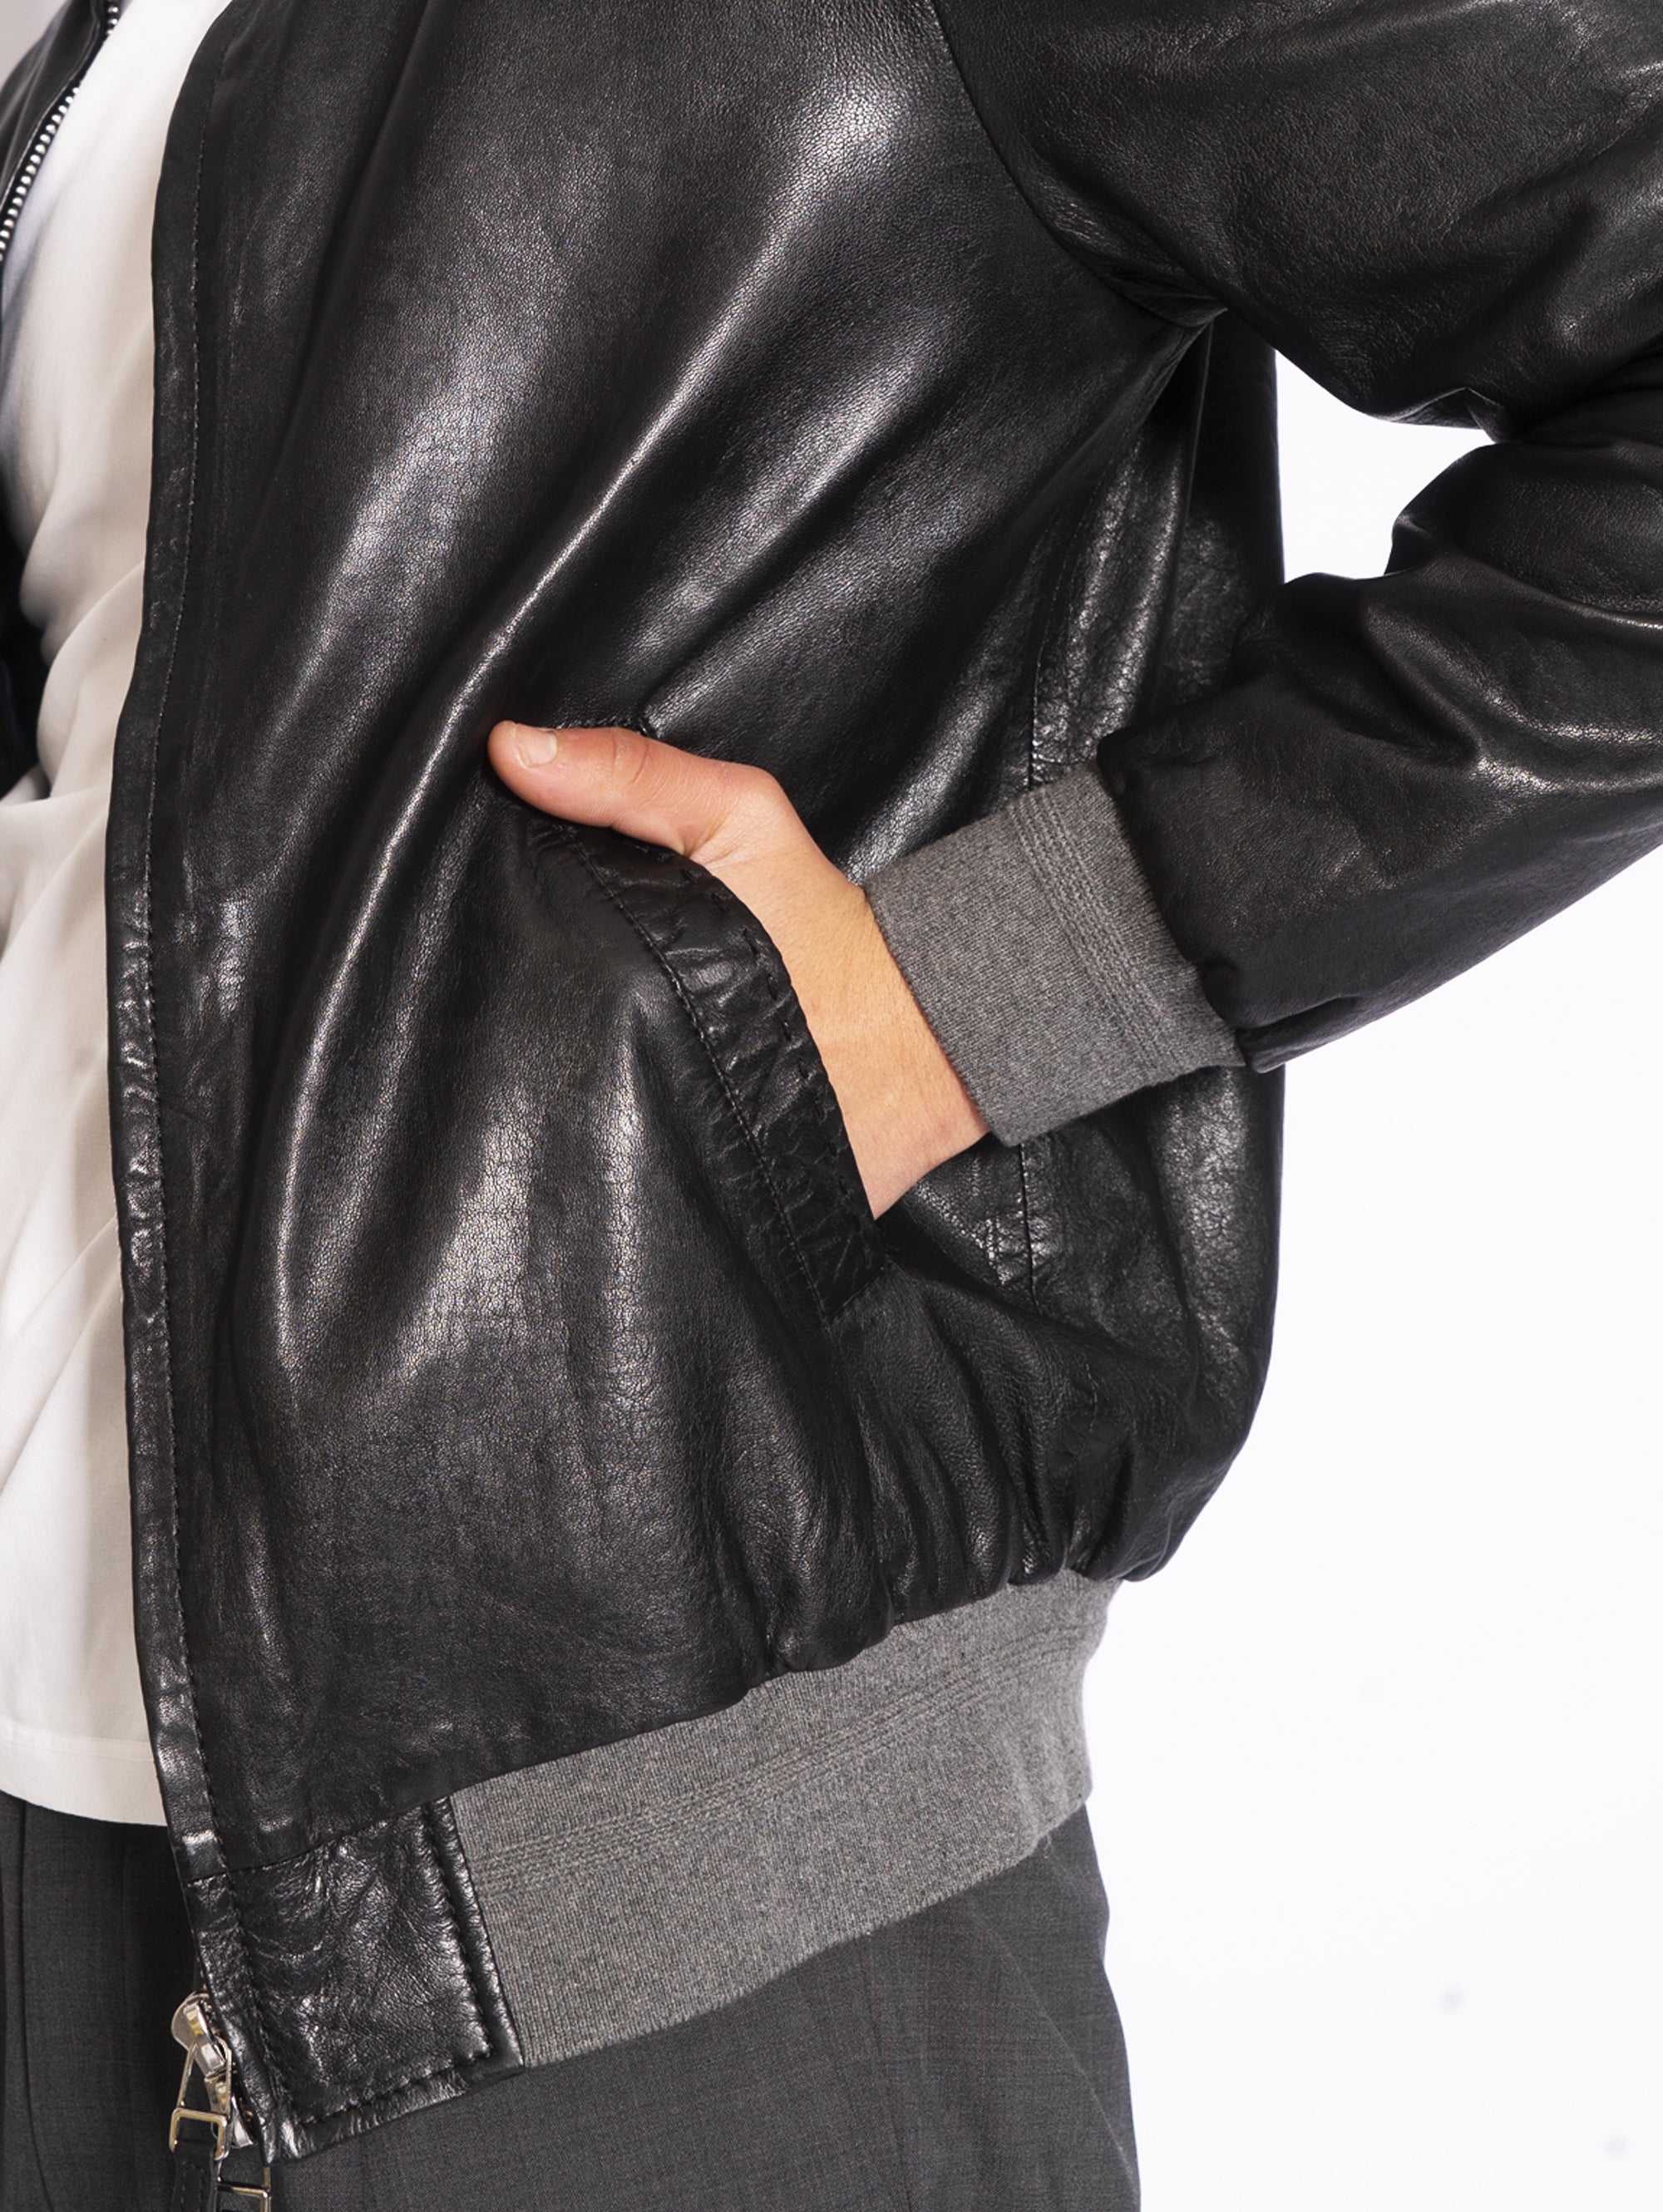 Harrington Jacket in Black Washed Leather